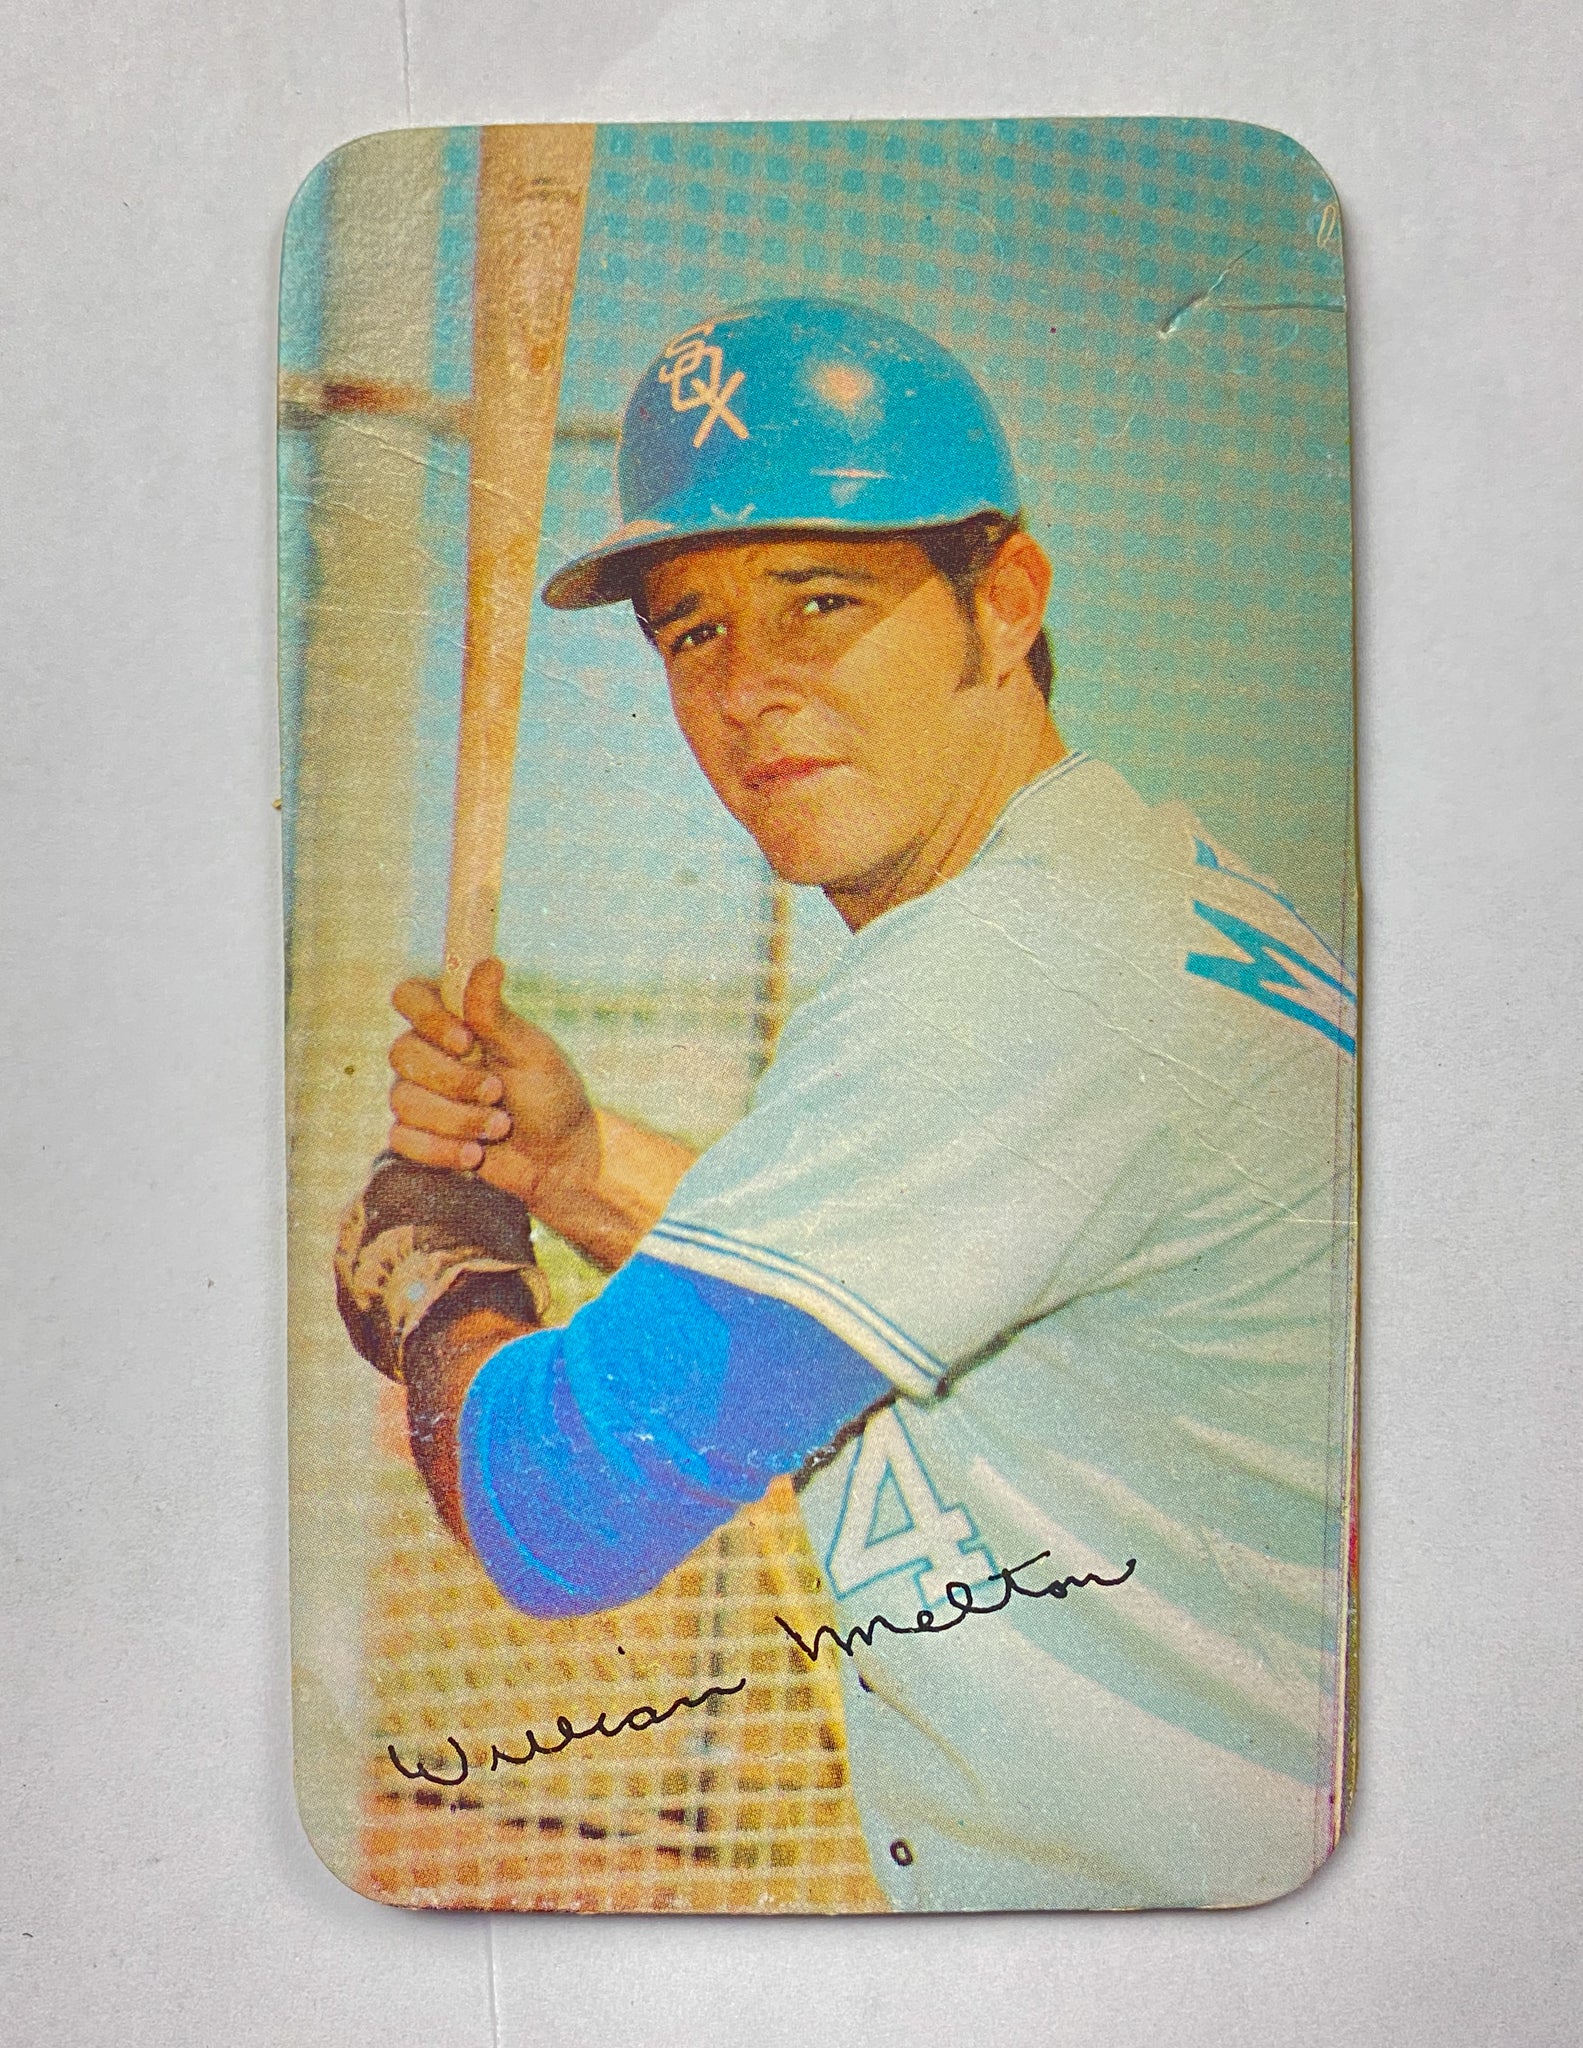 1971 Topps Super Bill Melton Chicago White Sox Baseball Card